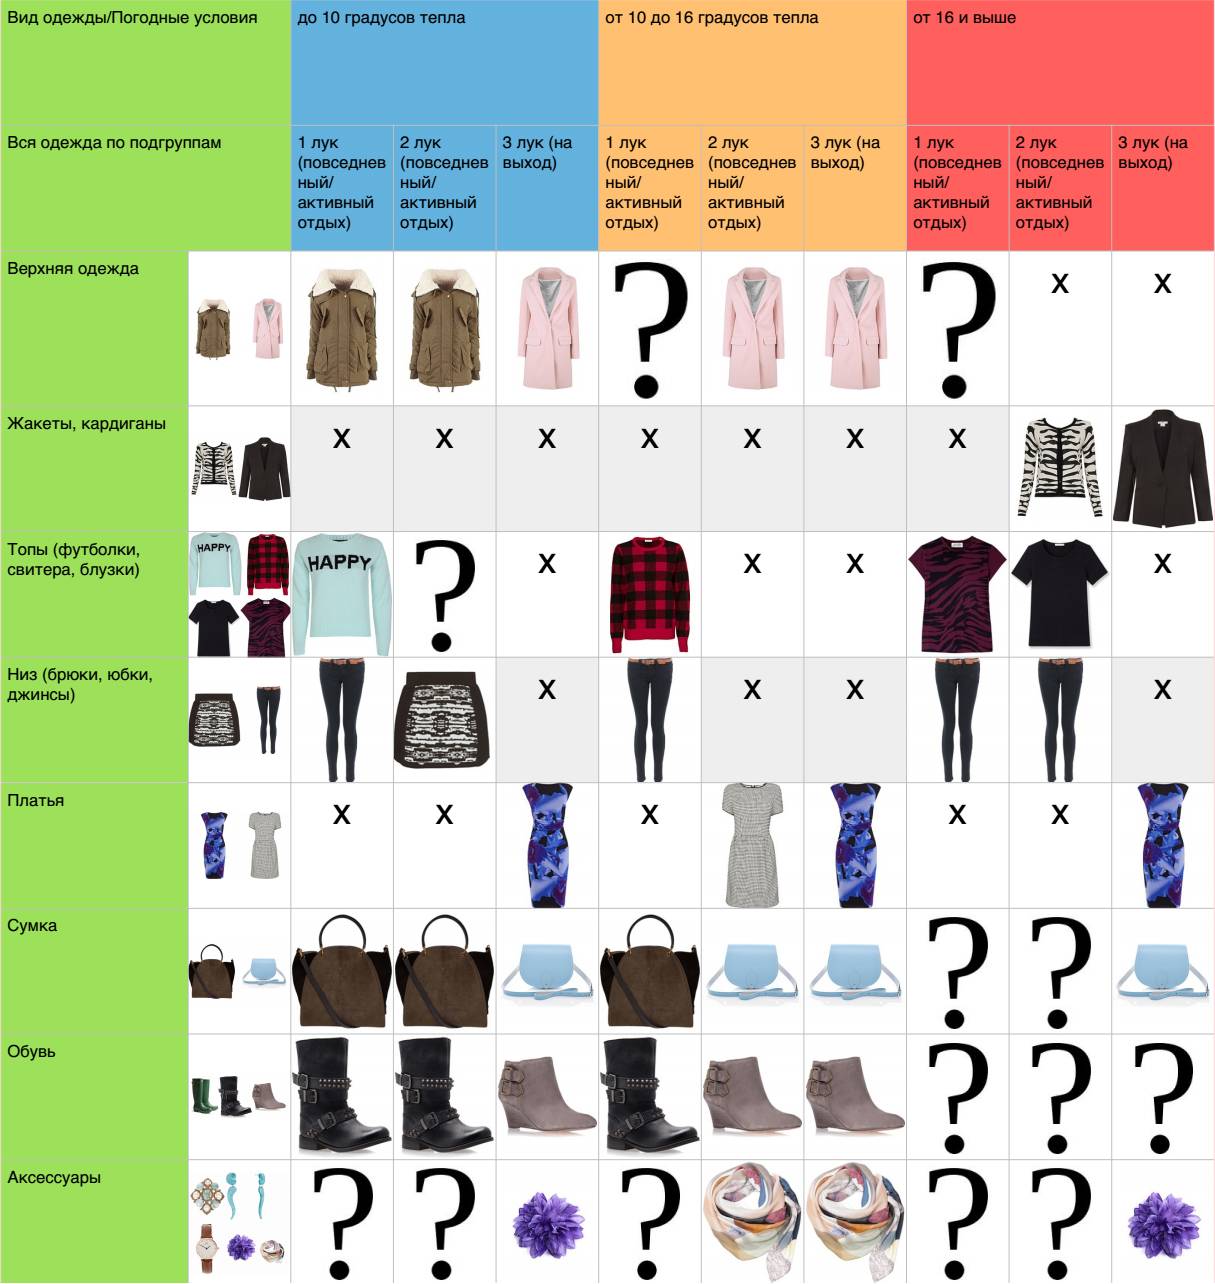 Таблица для составления капсульного гардероба